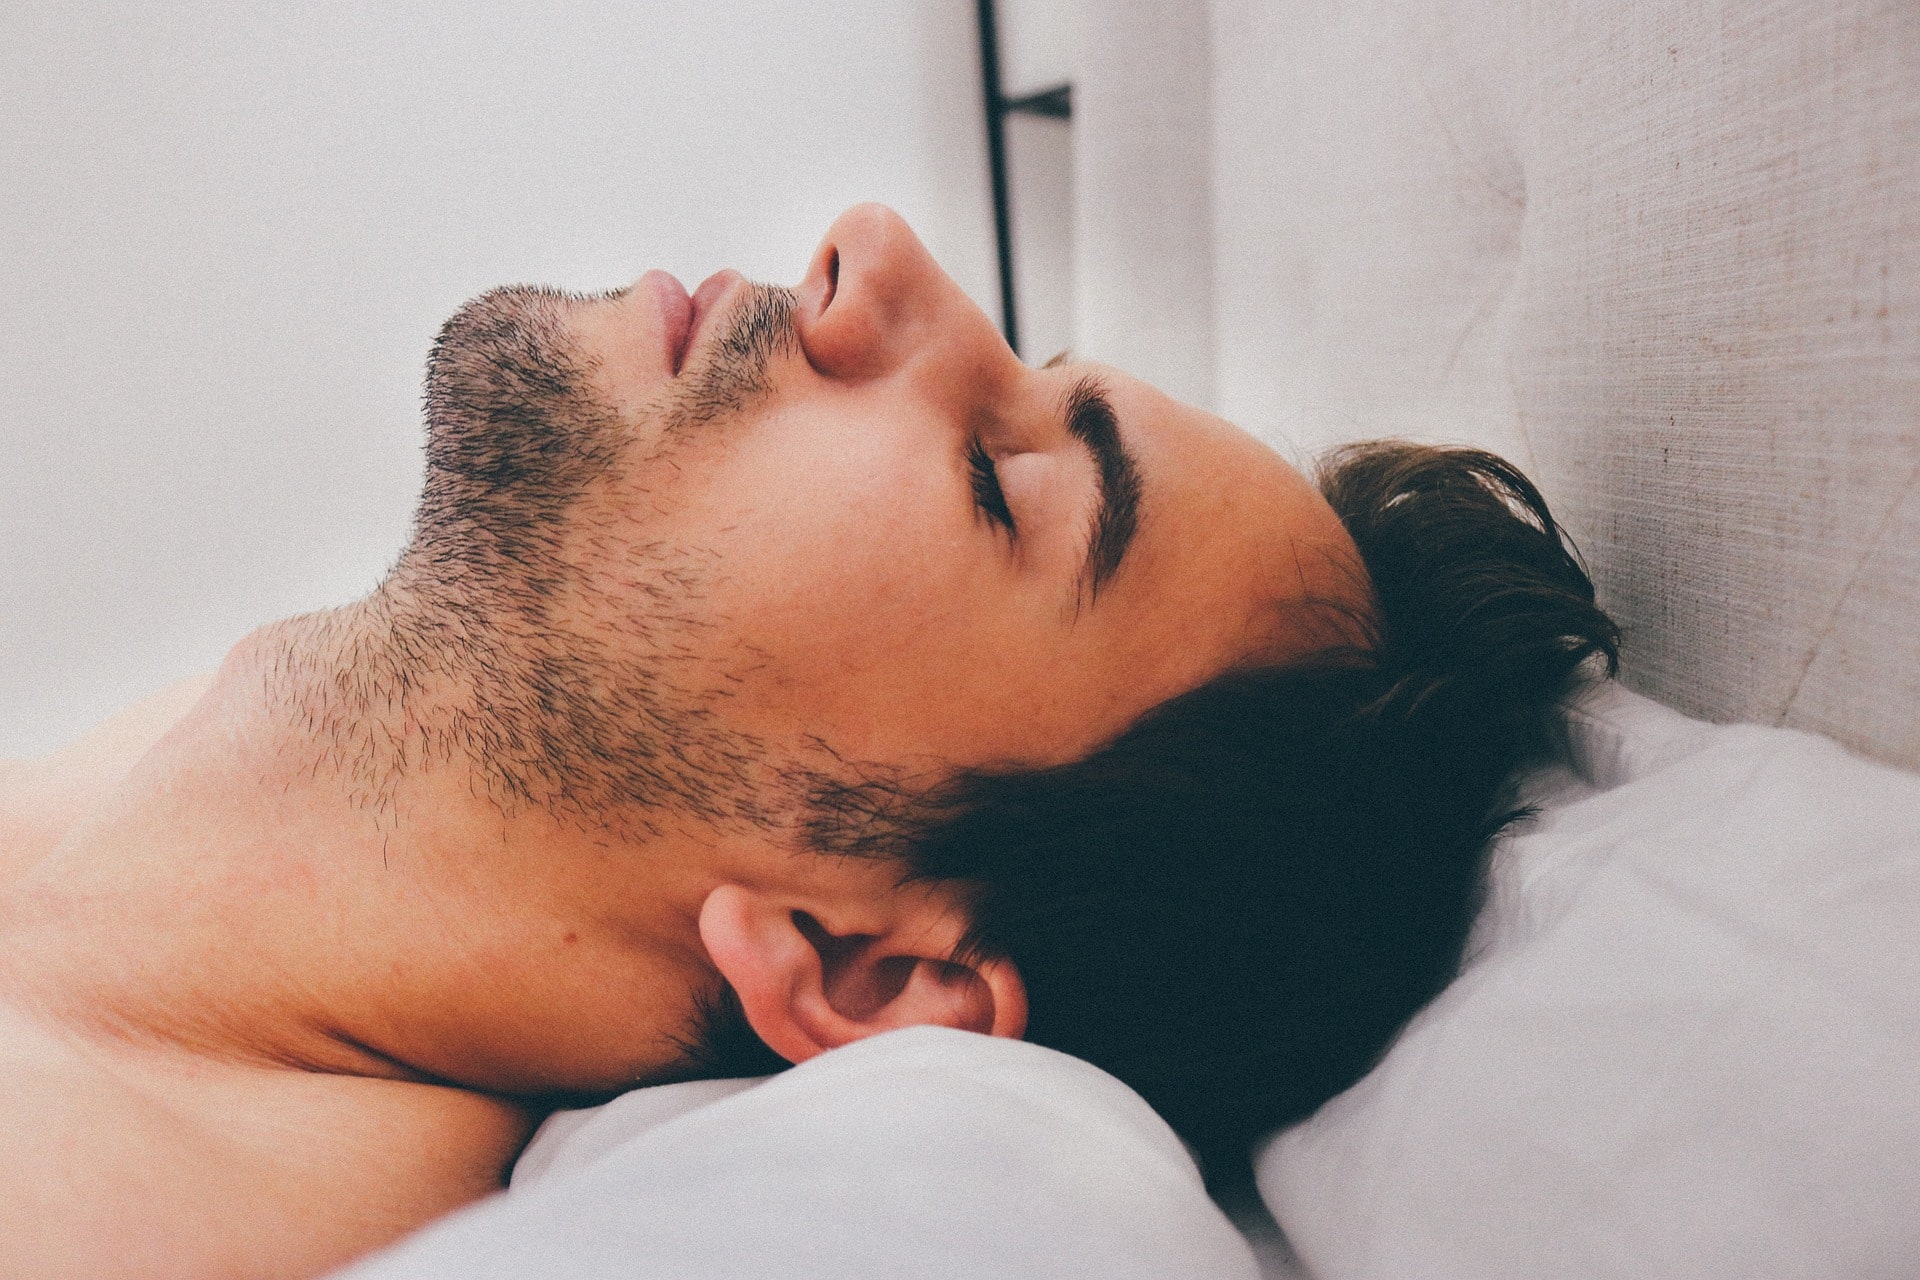 La mascarilla CPAP te ayuda a combatir la apnea del sueño, y debes reemplazarla periódicamente para su efectividad.